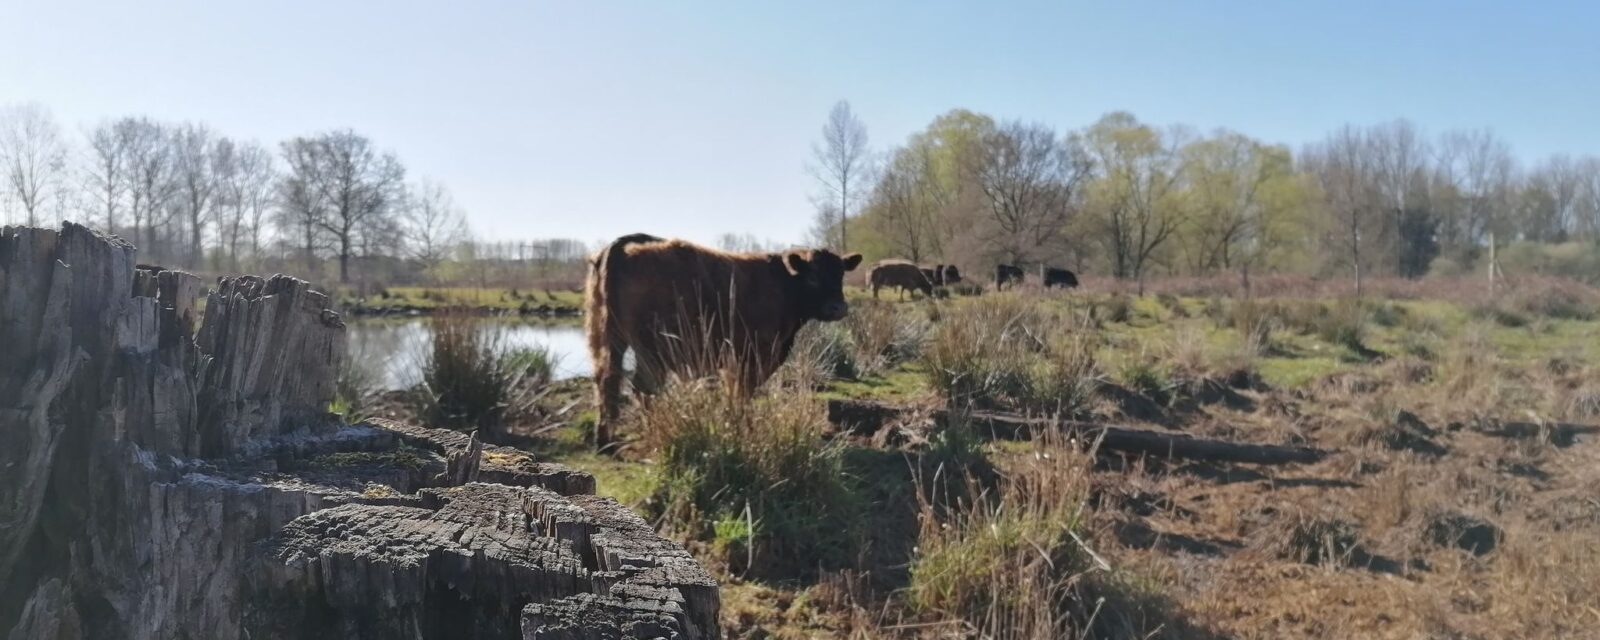 Koeien in de natuur